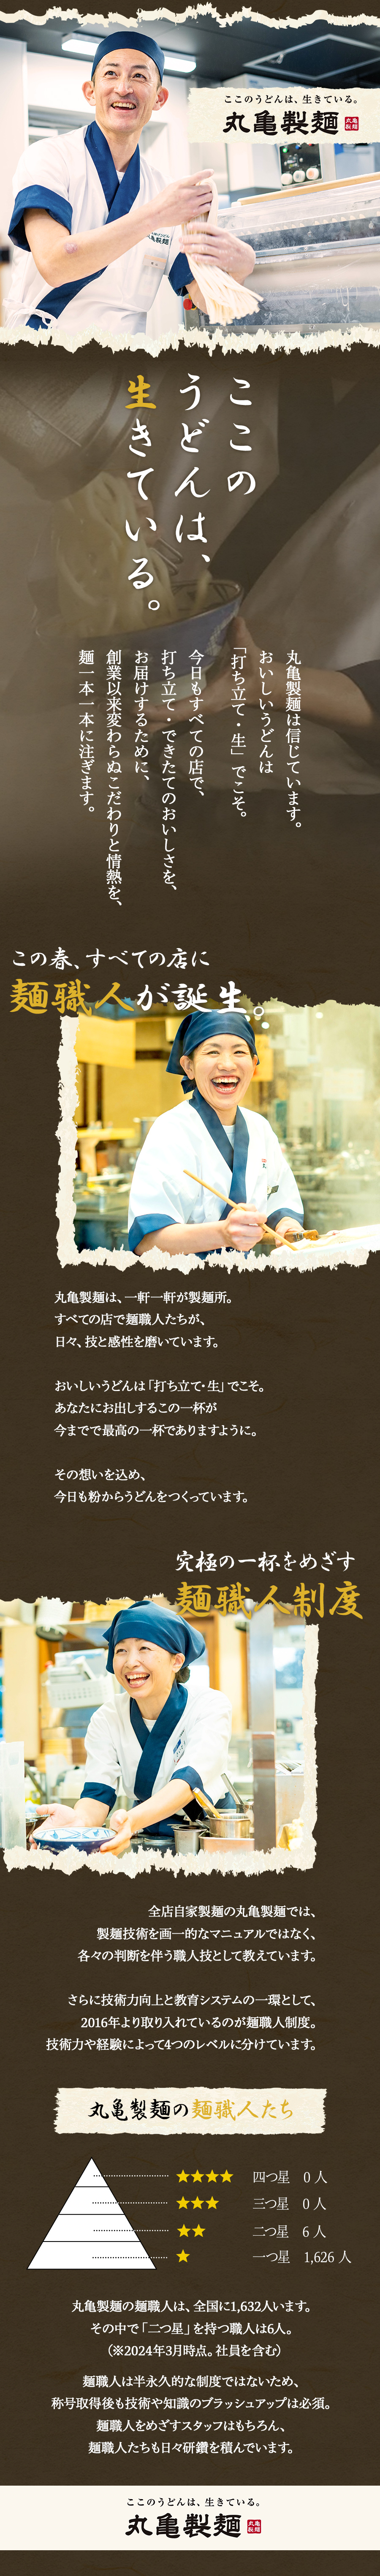 株式会社丸亀製麺からのメッセージ